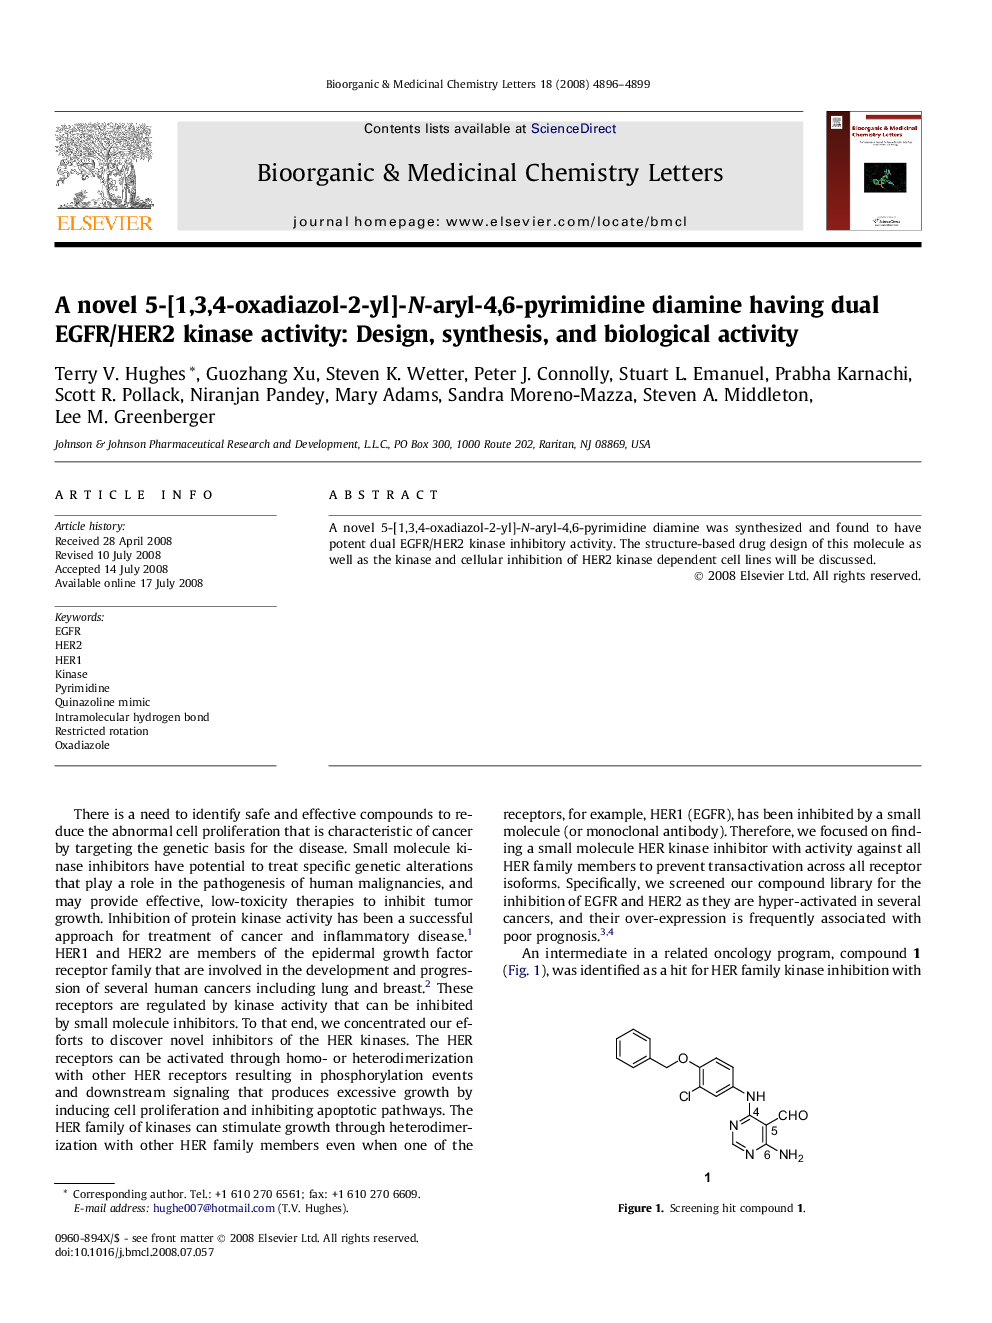 A novel 5-[1,3,4-oxadiazol-2-yl]-N-aryl-4,6-pyrimidine diamine having dual EGFR/HER2 kinase activity: Design, synthesis, and biological activity